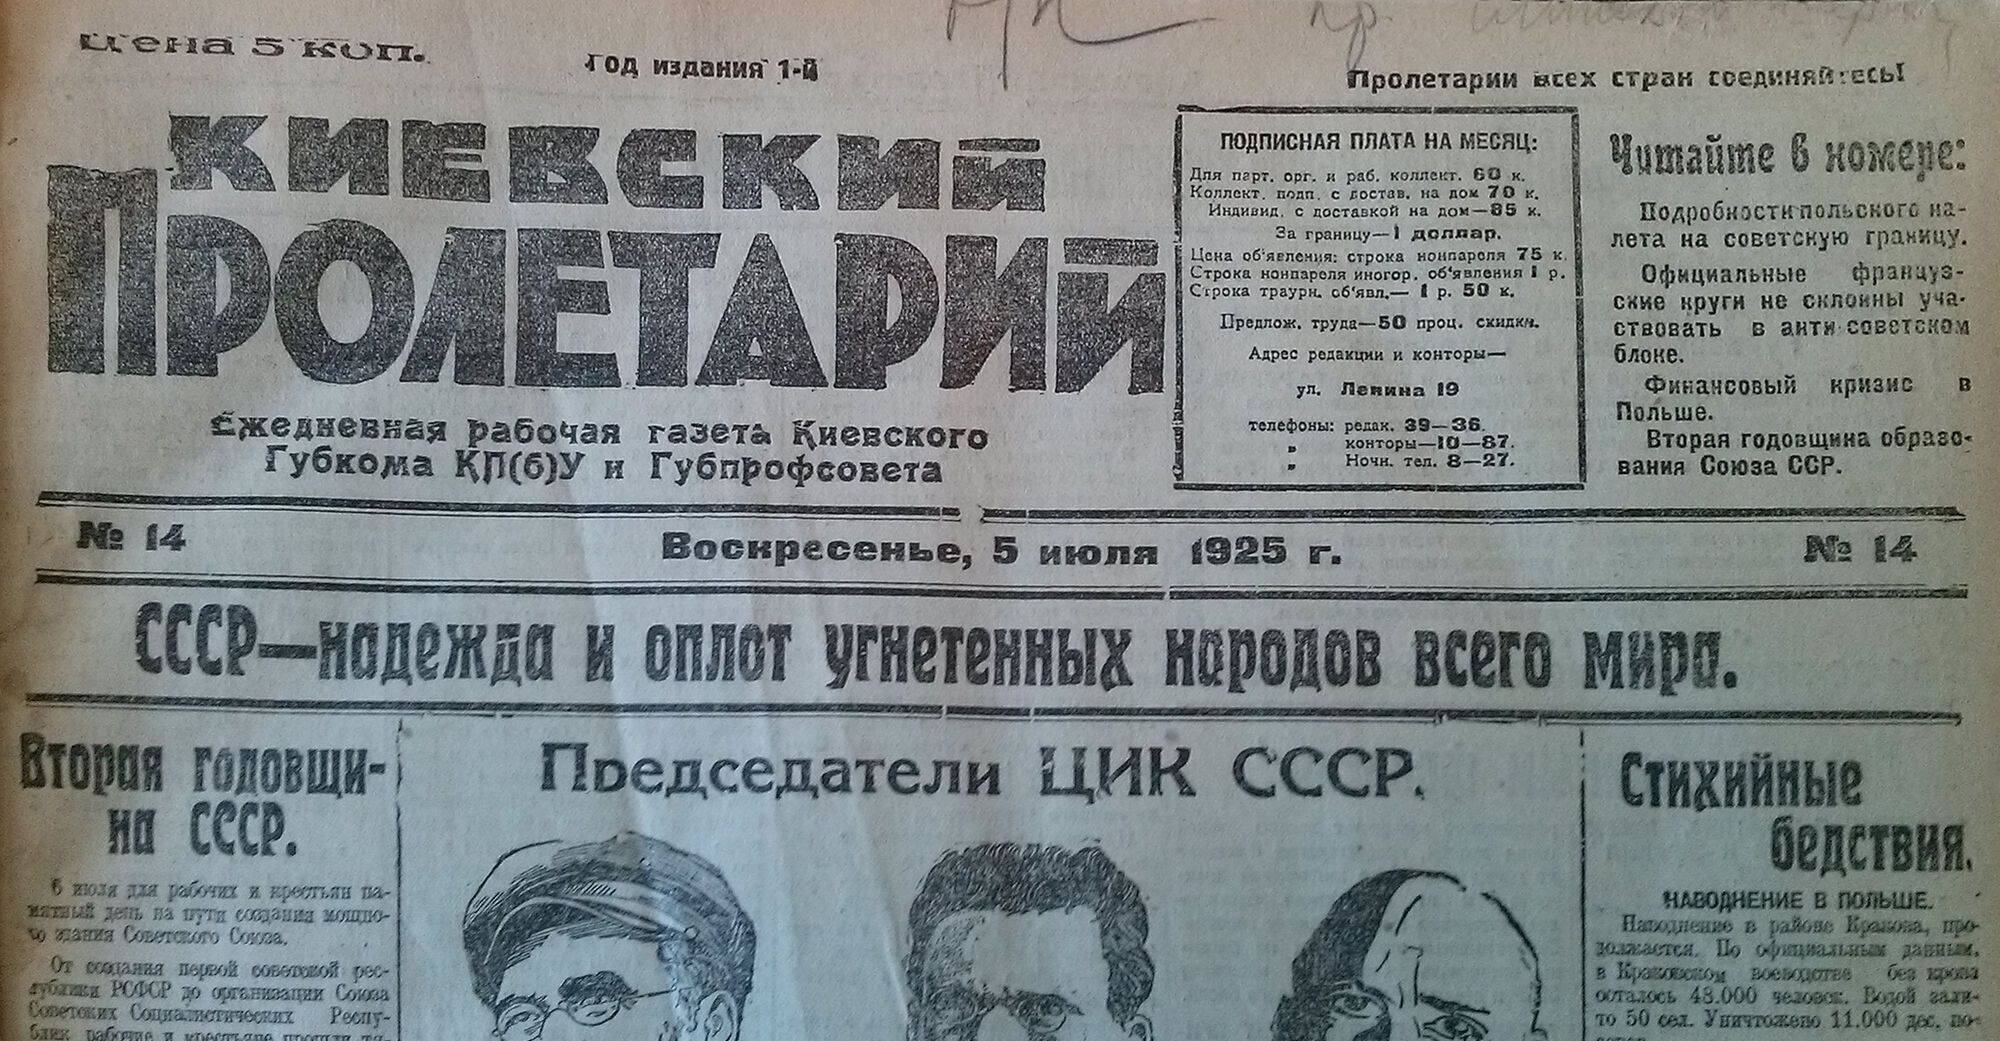 Первая страница газеты ''Киевский пролетарий'' за 5 июля 1925 года с материалами ко второй годовщине создания СССР